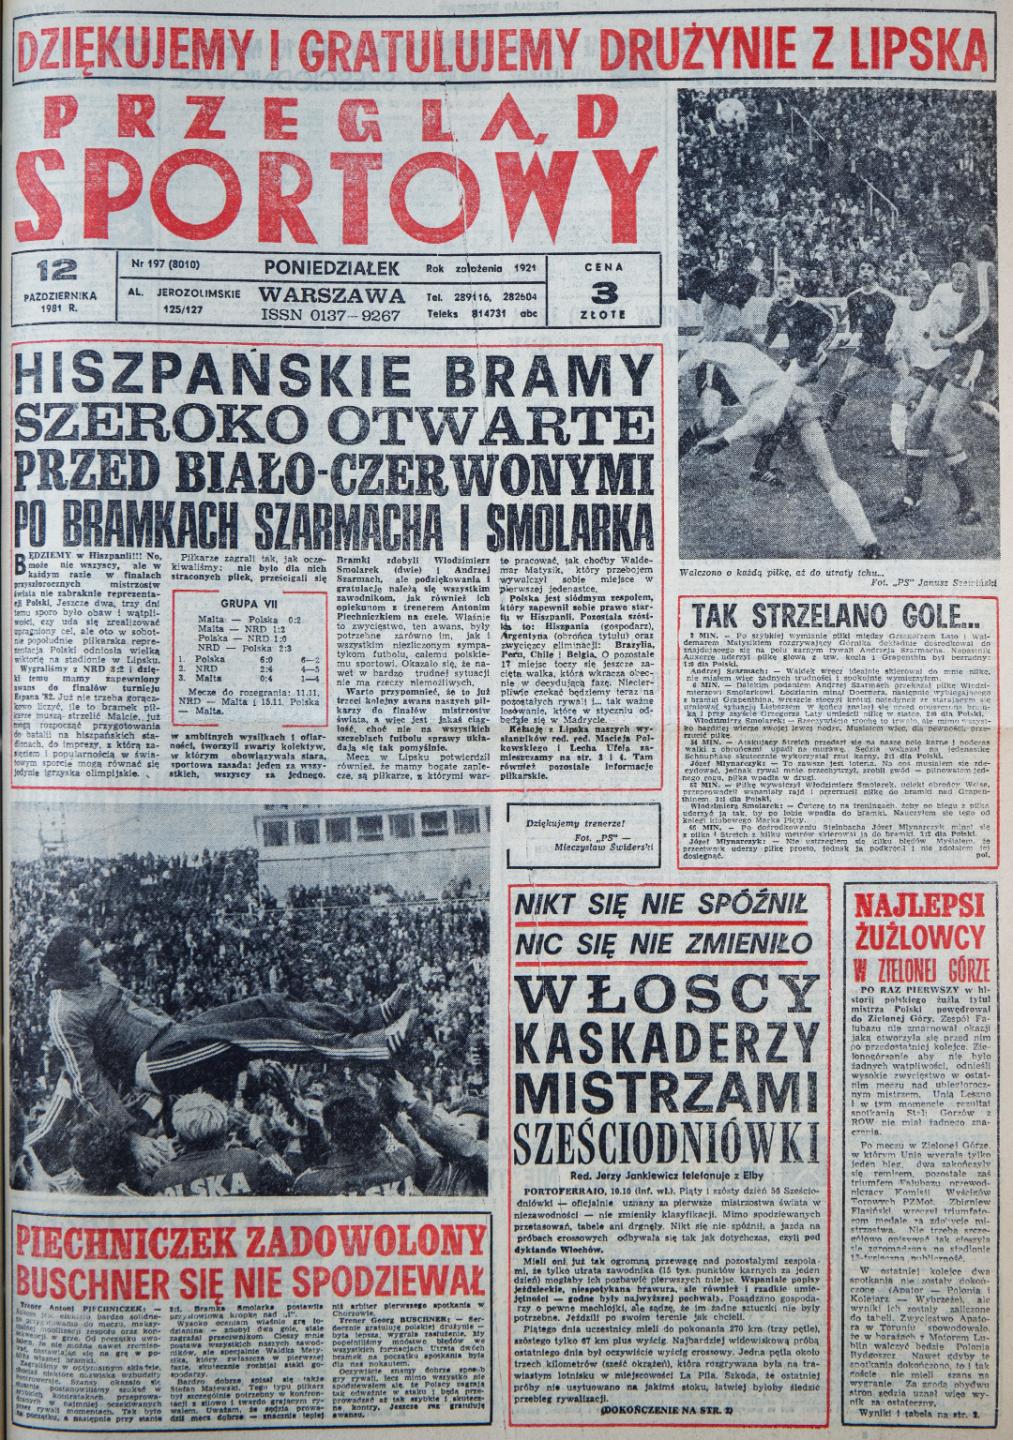 Okładka Przeglądu Sportowego po meczu NRD - Polska (11 października 1981)